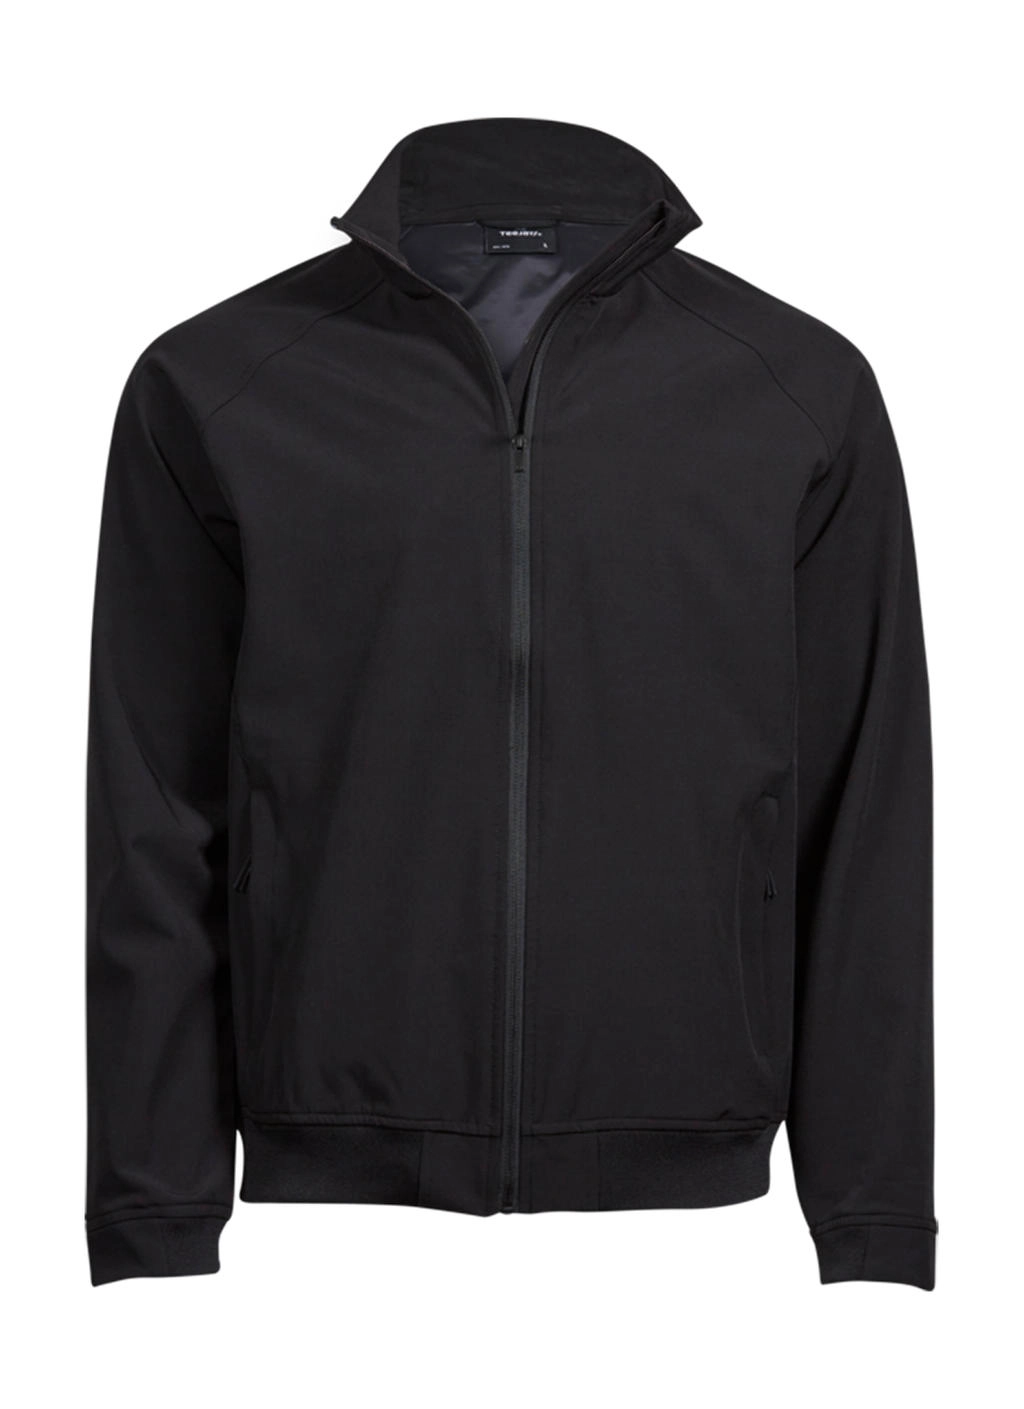 Club Jacket zum Besticken und Bedrucken in der Farbe Black mit Ihren Logo, Schriftzug oder Motiv.